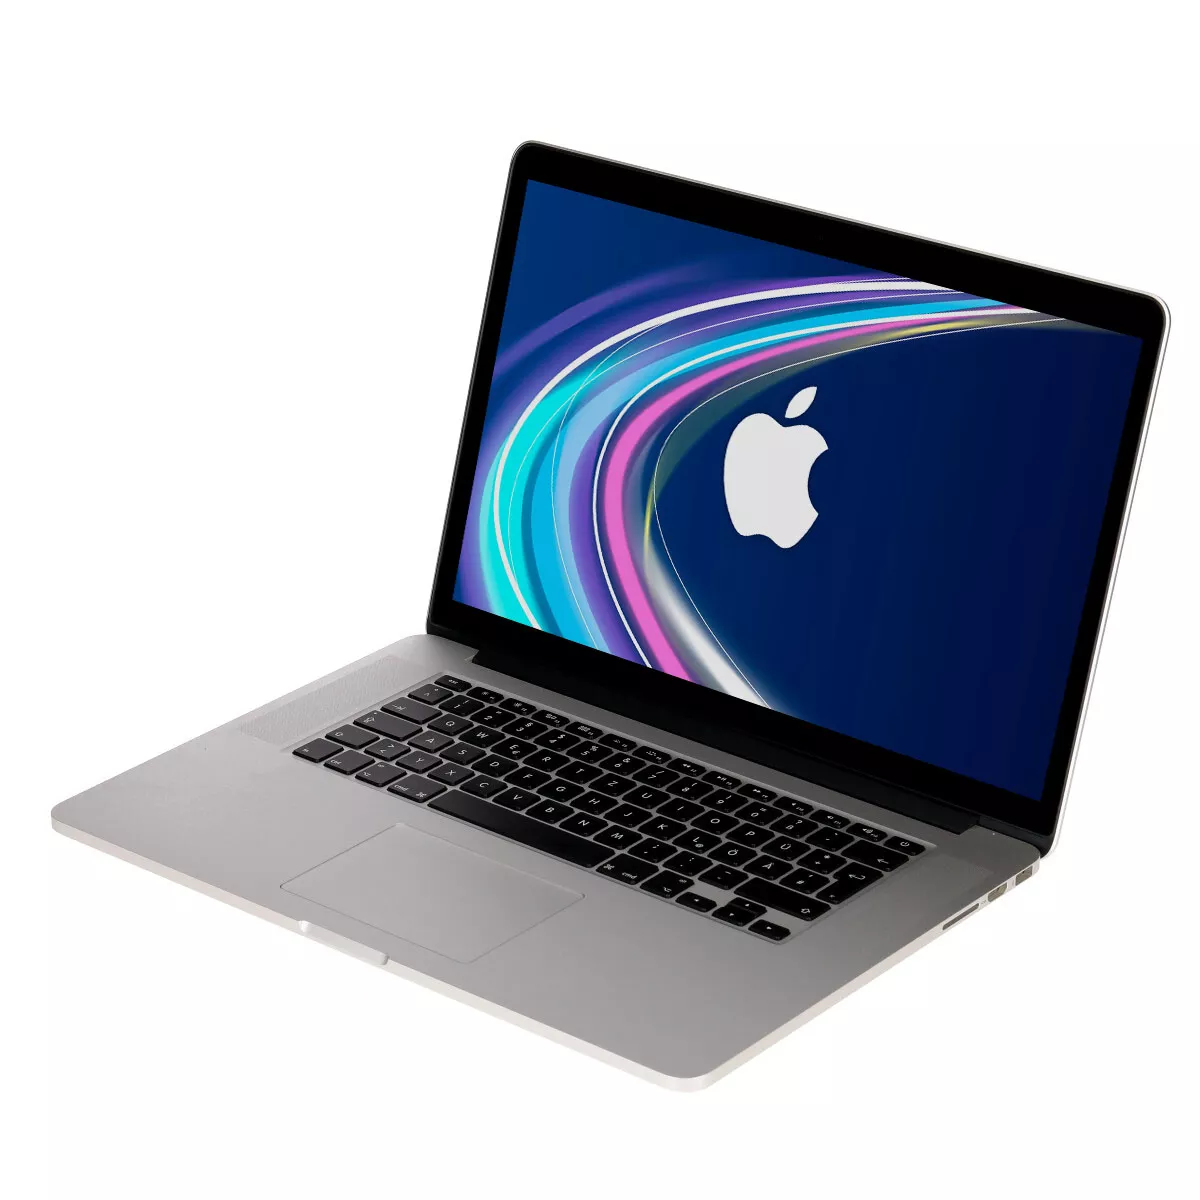 Apple MacBook Pro 15" Mid 2015 Core i7 4770HQ 16 GB 240 GB SSD Webcam B